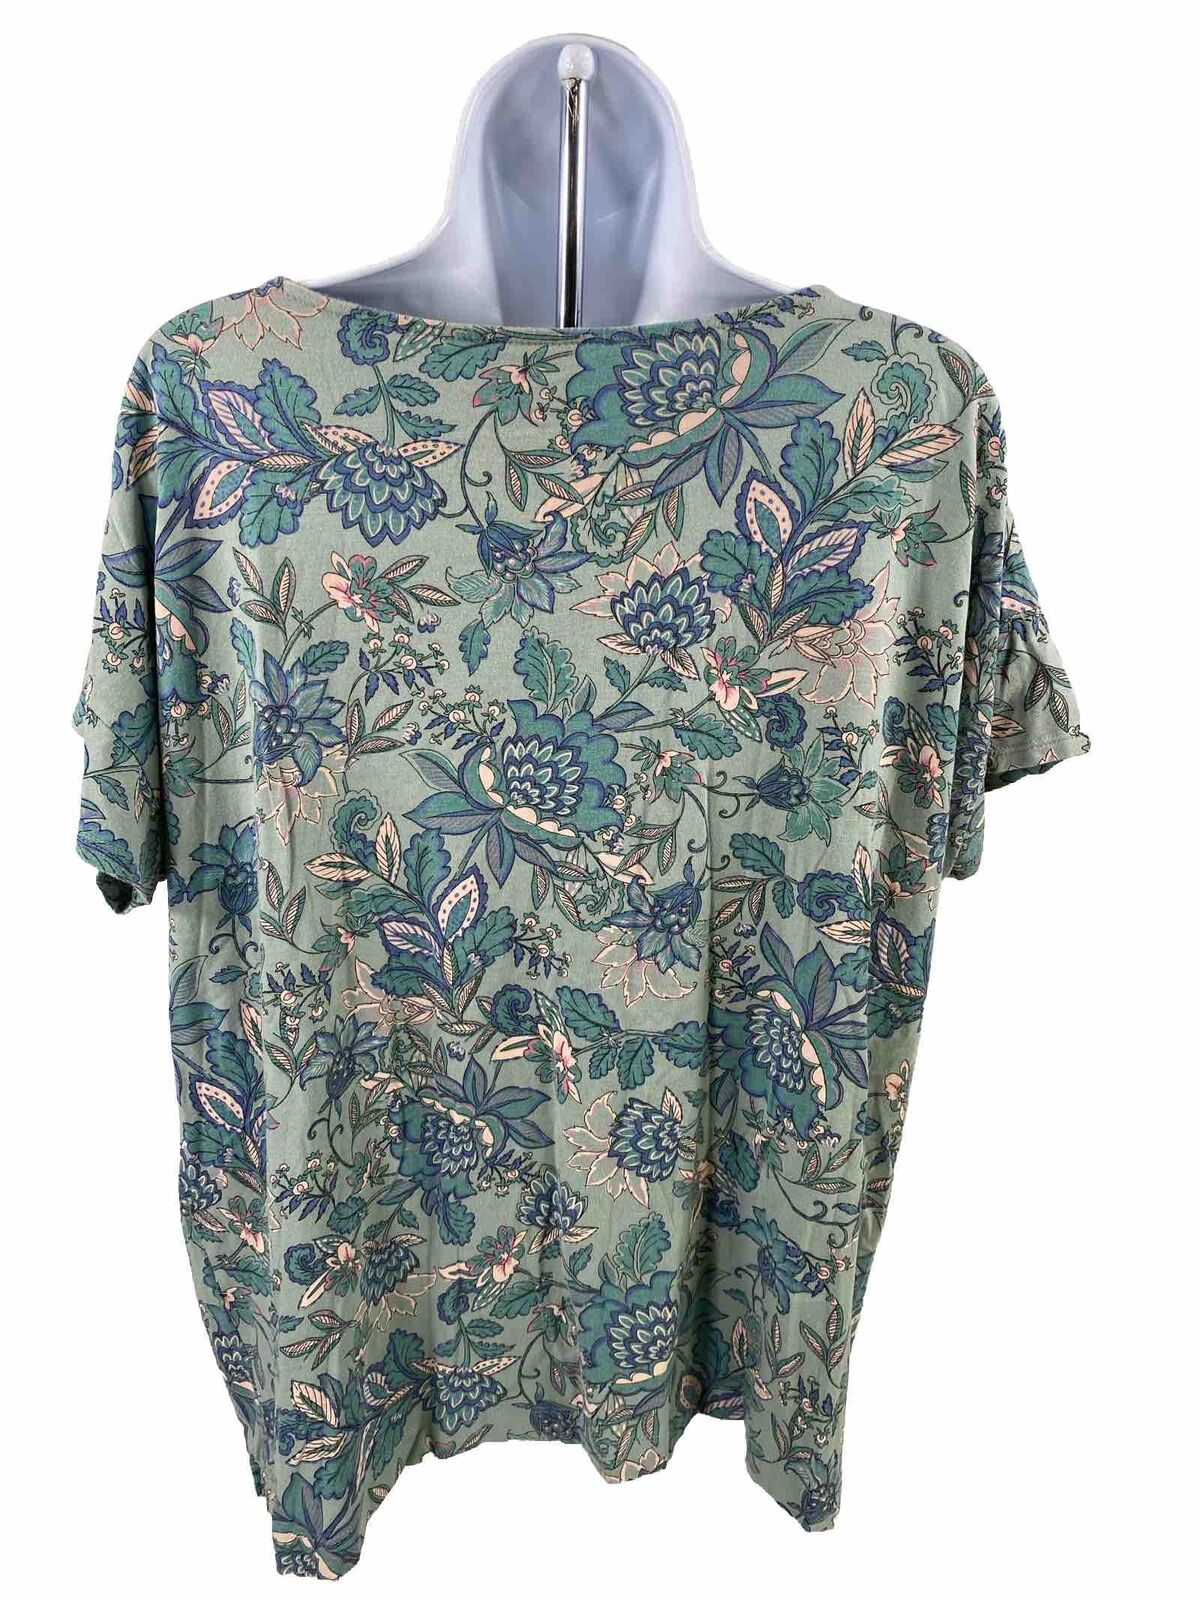 J.Jill Women's Green Floral Luxe Supima Short Sleeve T-Shirt - L